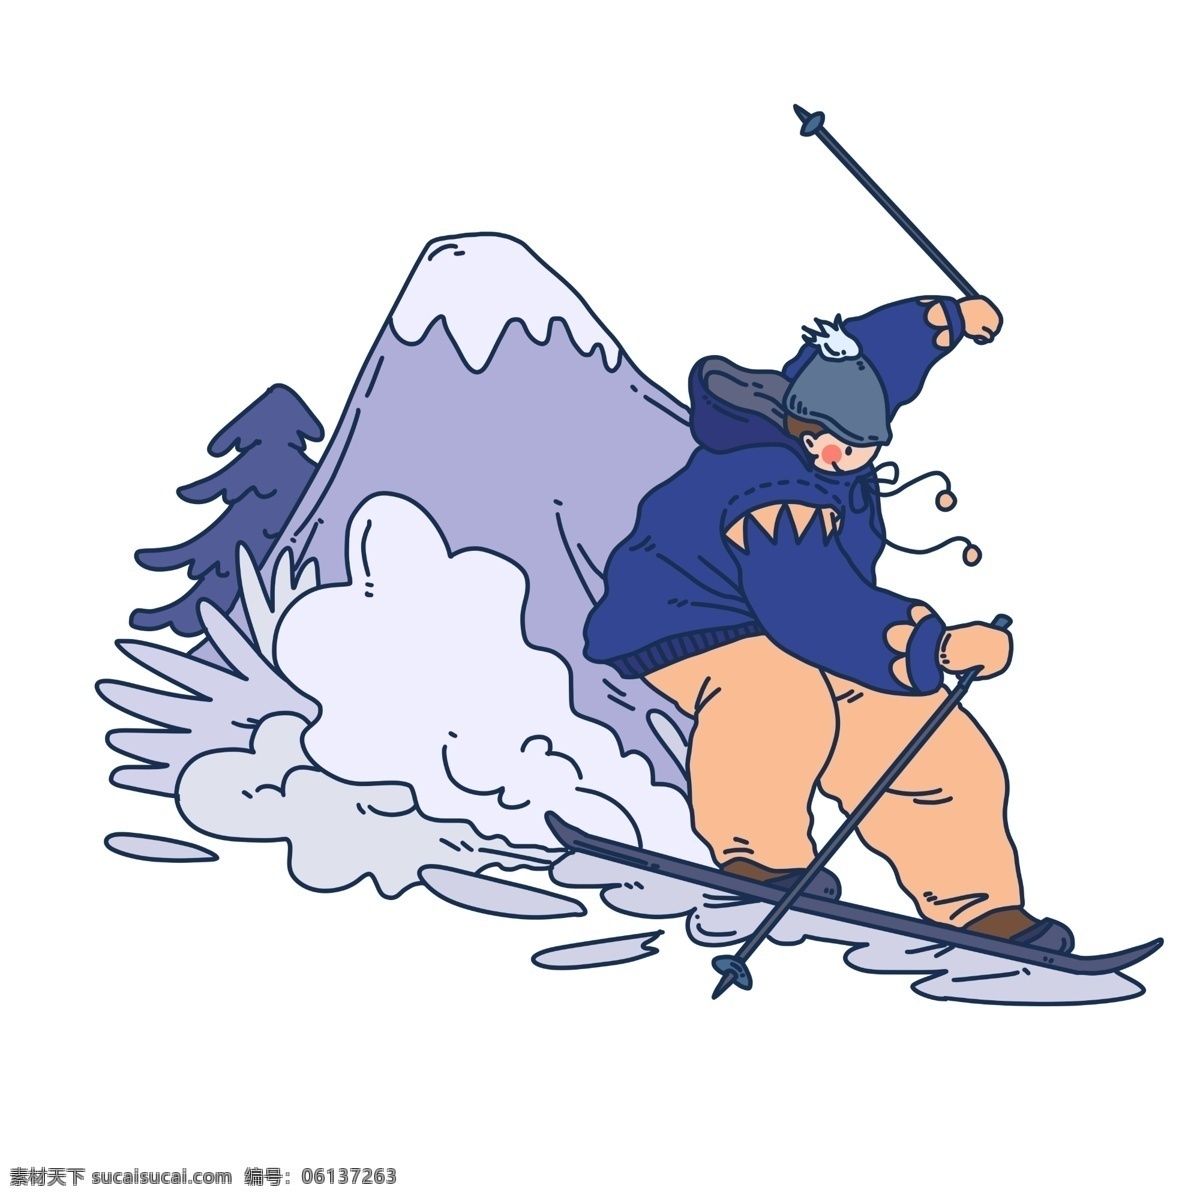 冬季 雪上 运动 滑雪 人物 插画 手绘滑雪 冬季雪上运动 滑雪人物 滑雪场 雪地 下雪天 卡通滑雪人物 手绘